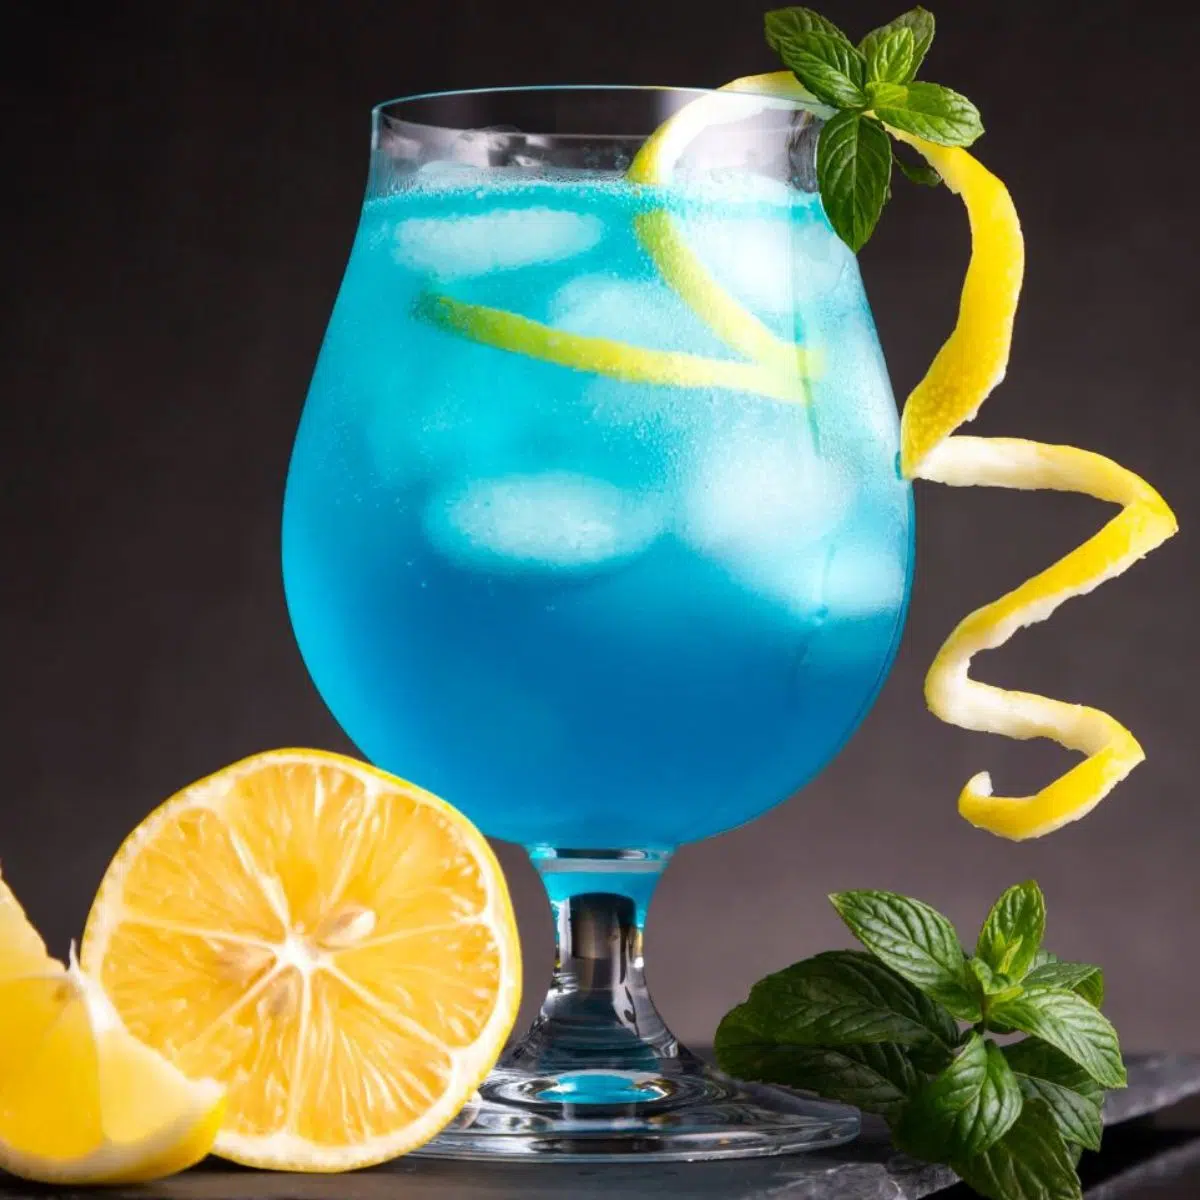 Resipi minuman koktel lagun biru terbaik dihidangkan dengan sentuhan lemon dan hiasan selasih.